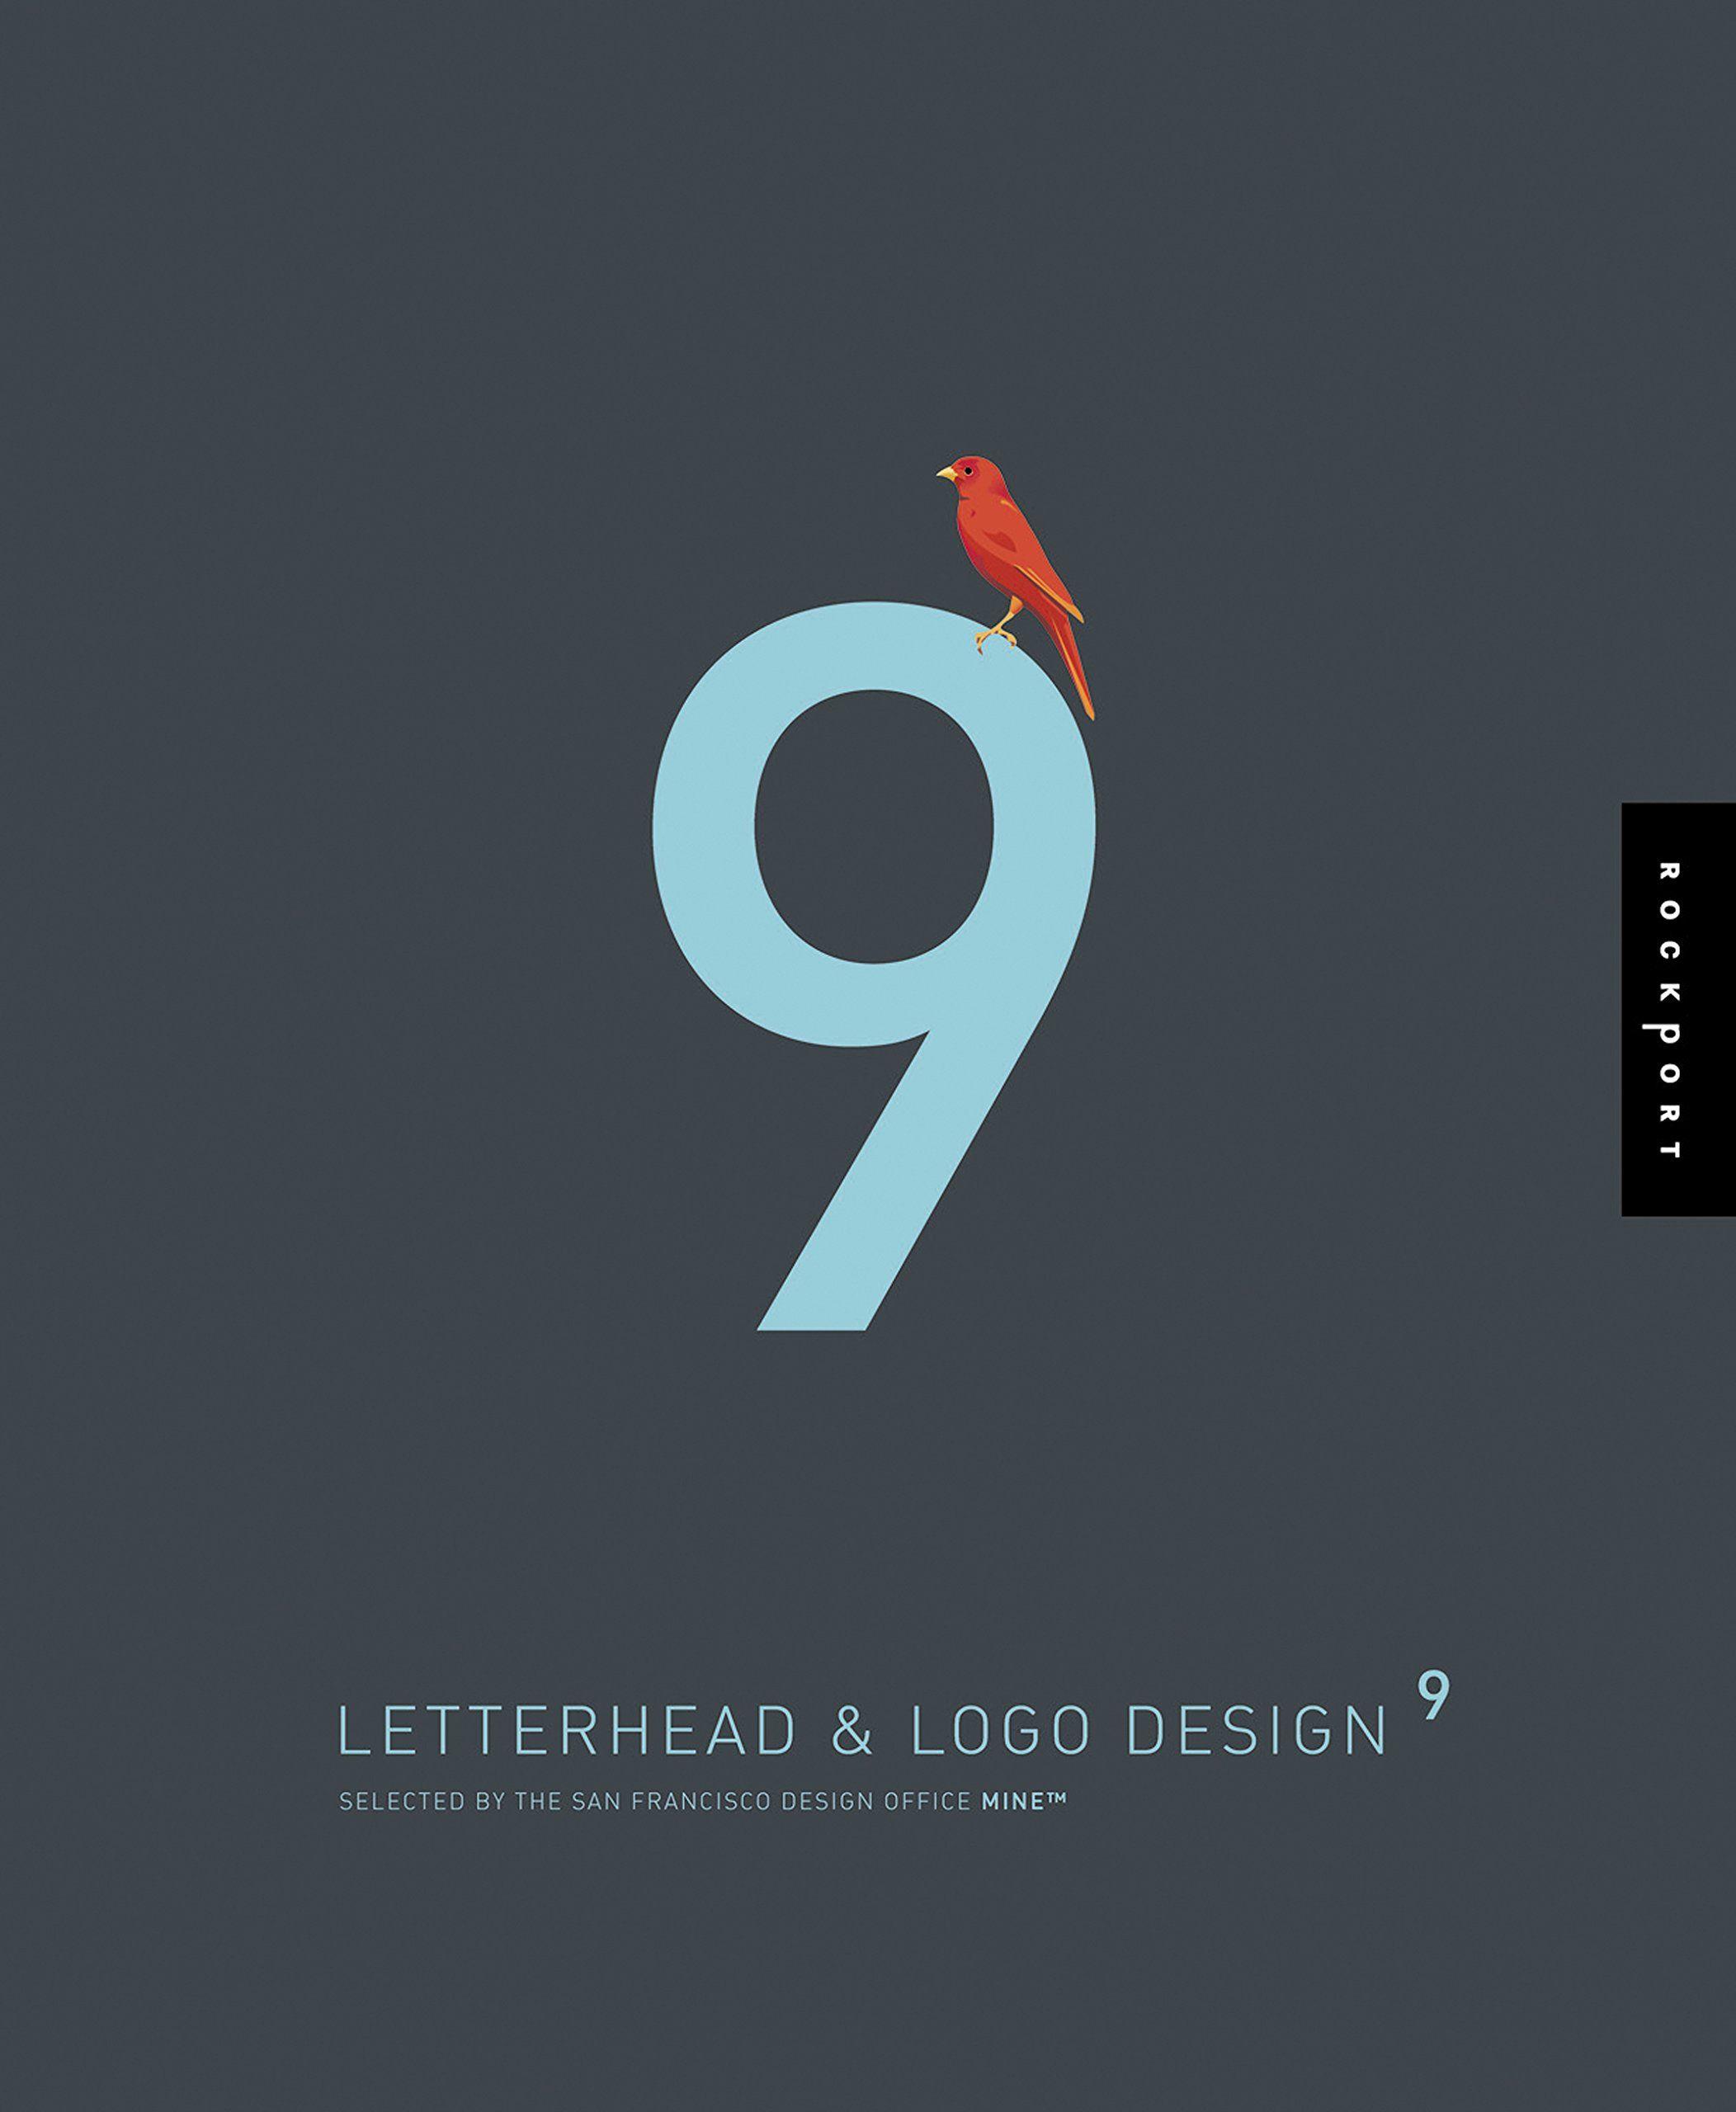 9 Logo - Letterhead and Logo Design 9 (Letterhead & LOGO Design (Quality)) (v ...